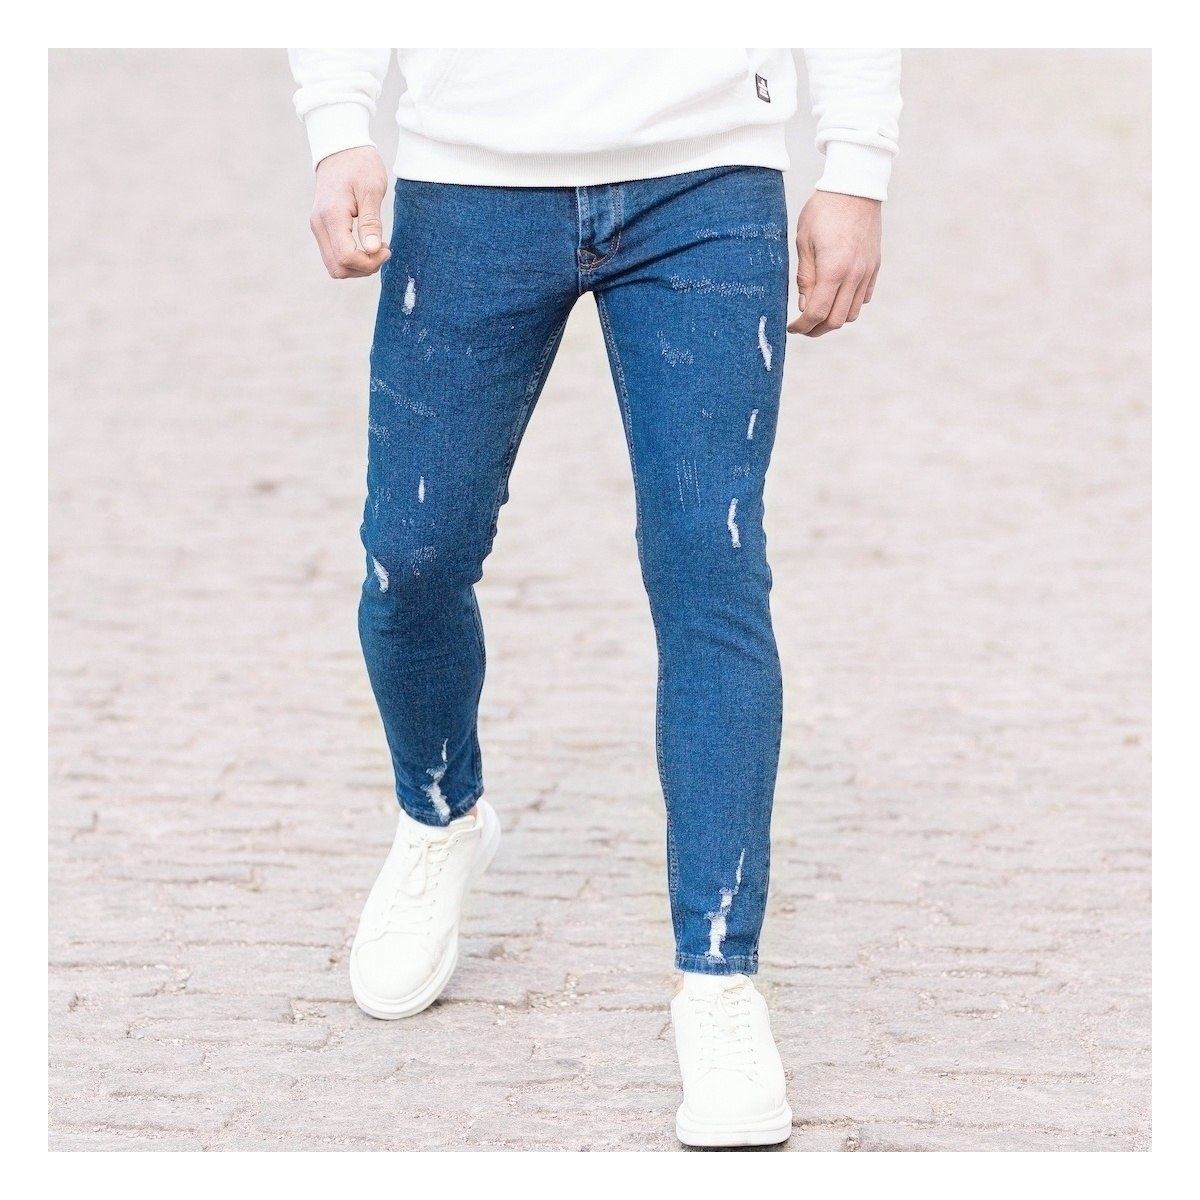 Herren Jeans mit Rissen in dunkelblau - 6